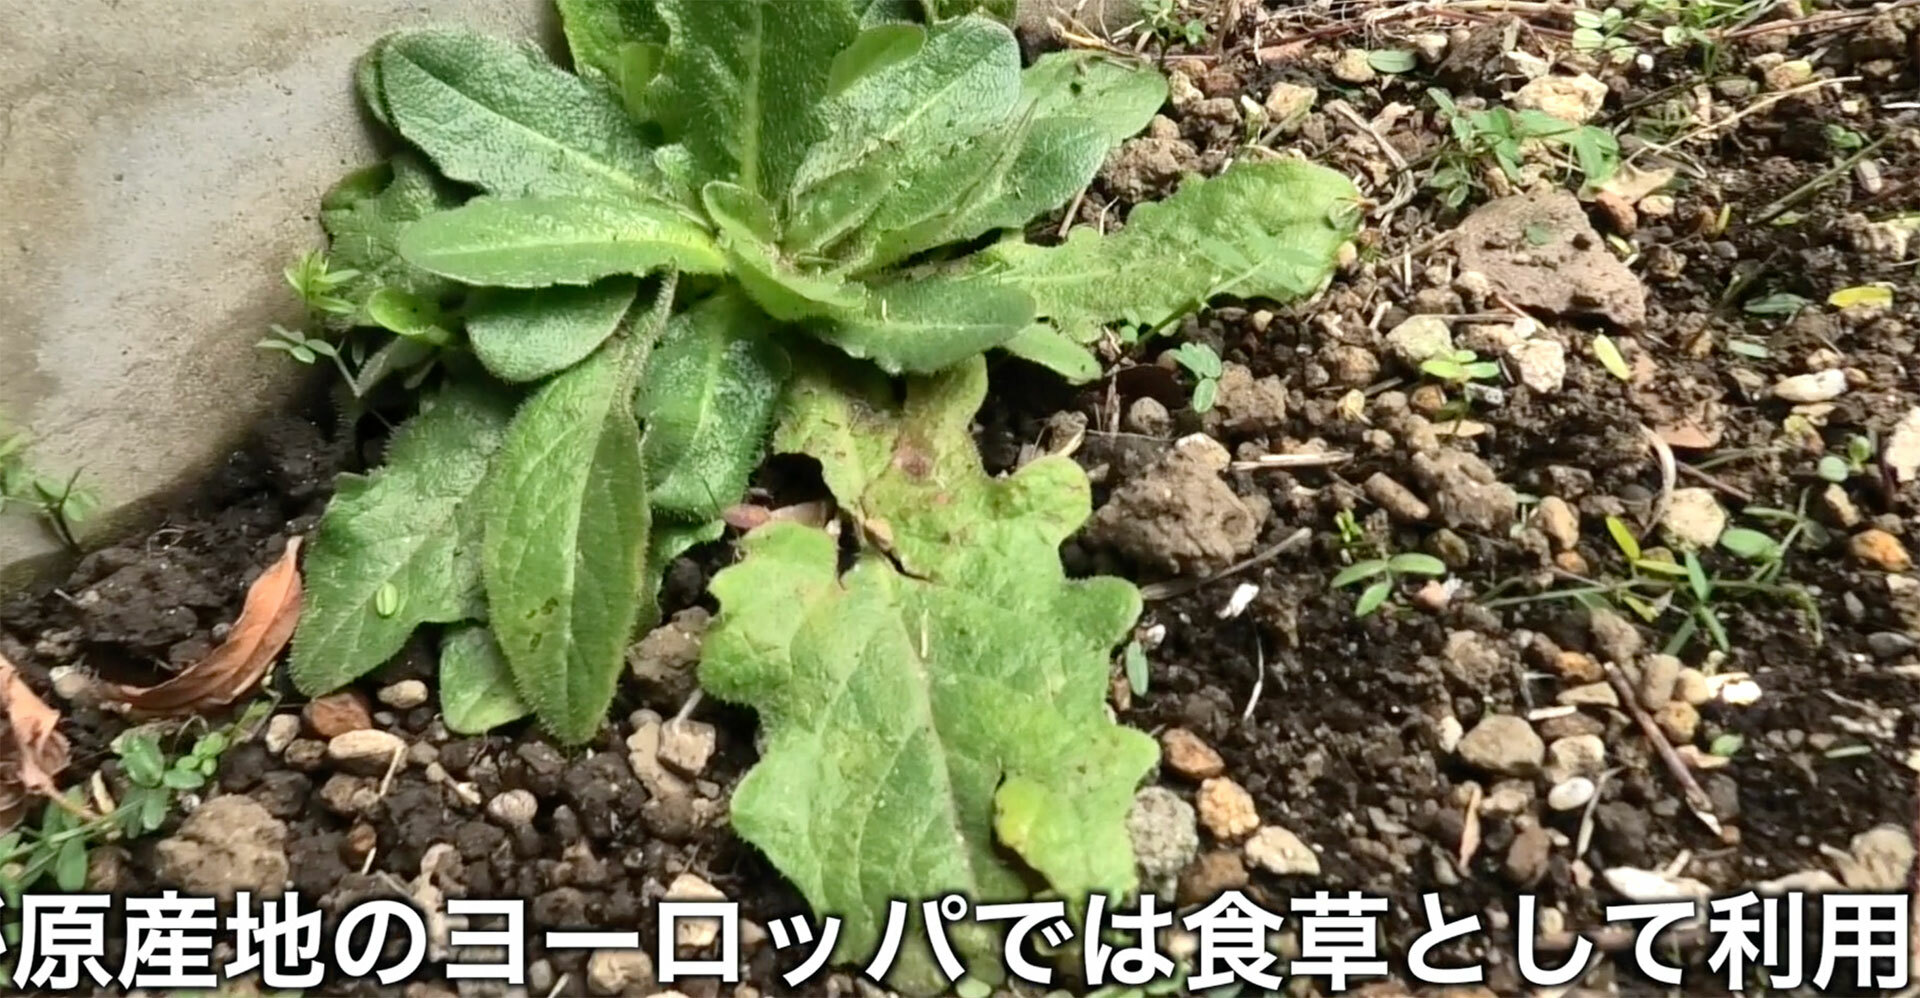 日本では雑草扱いだが原産地のヨーロッパではハーブや野菜として食用に利用されている